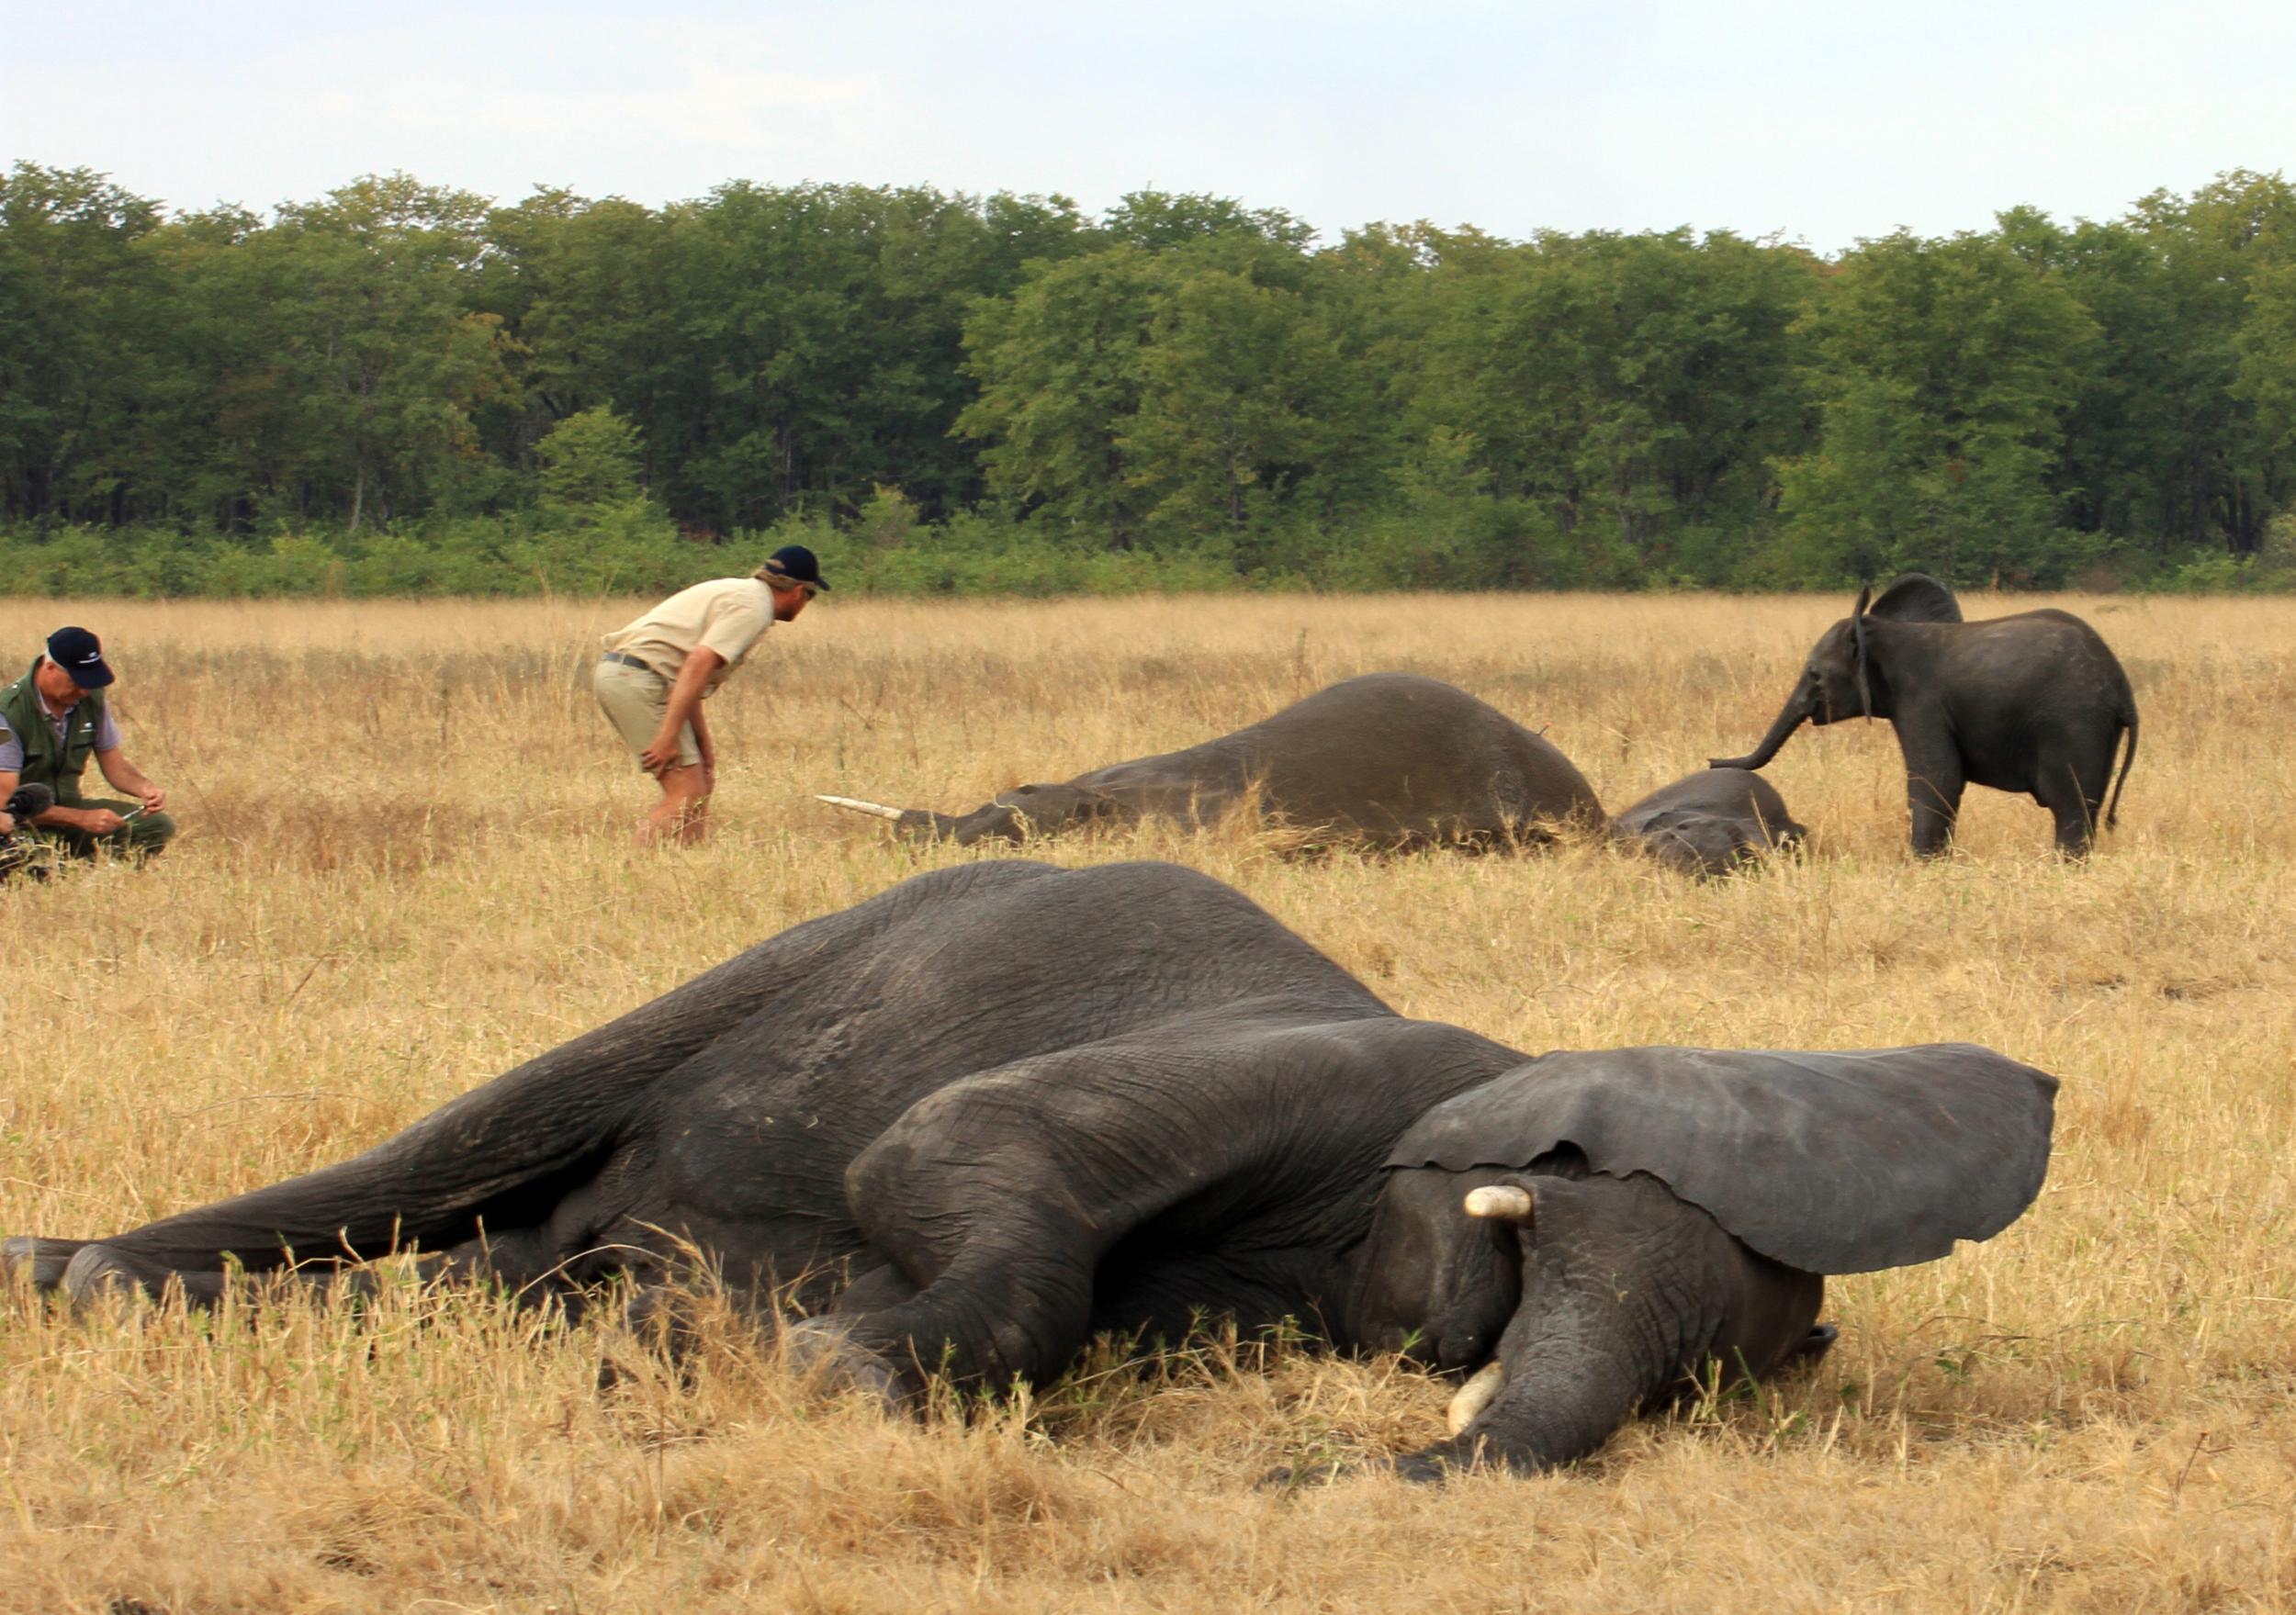 Tranquilised elephants lie motionless in Liwonde National Park